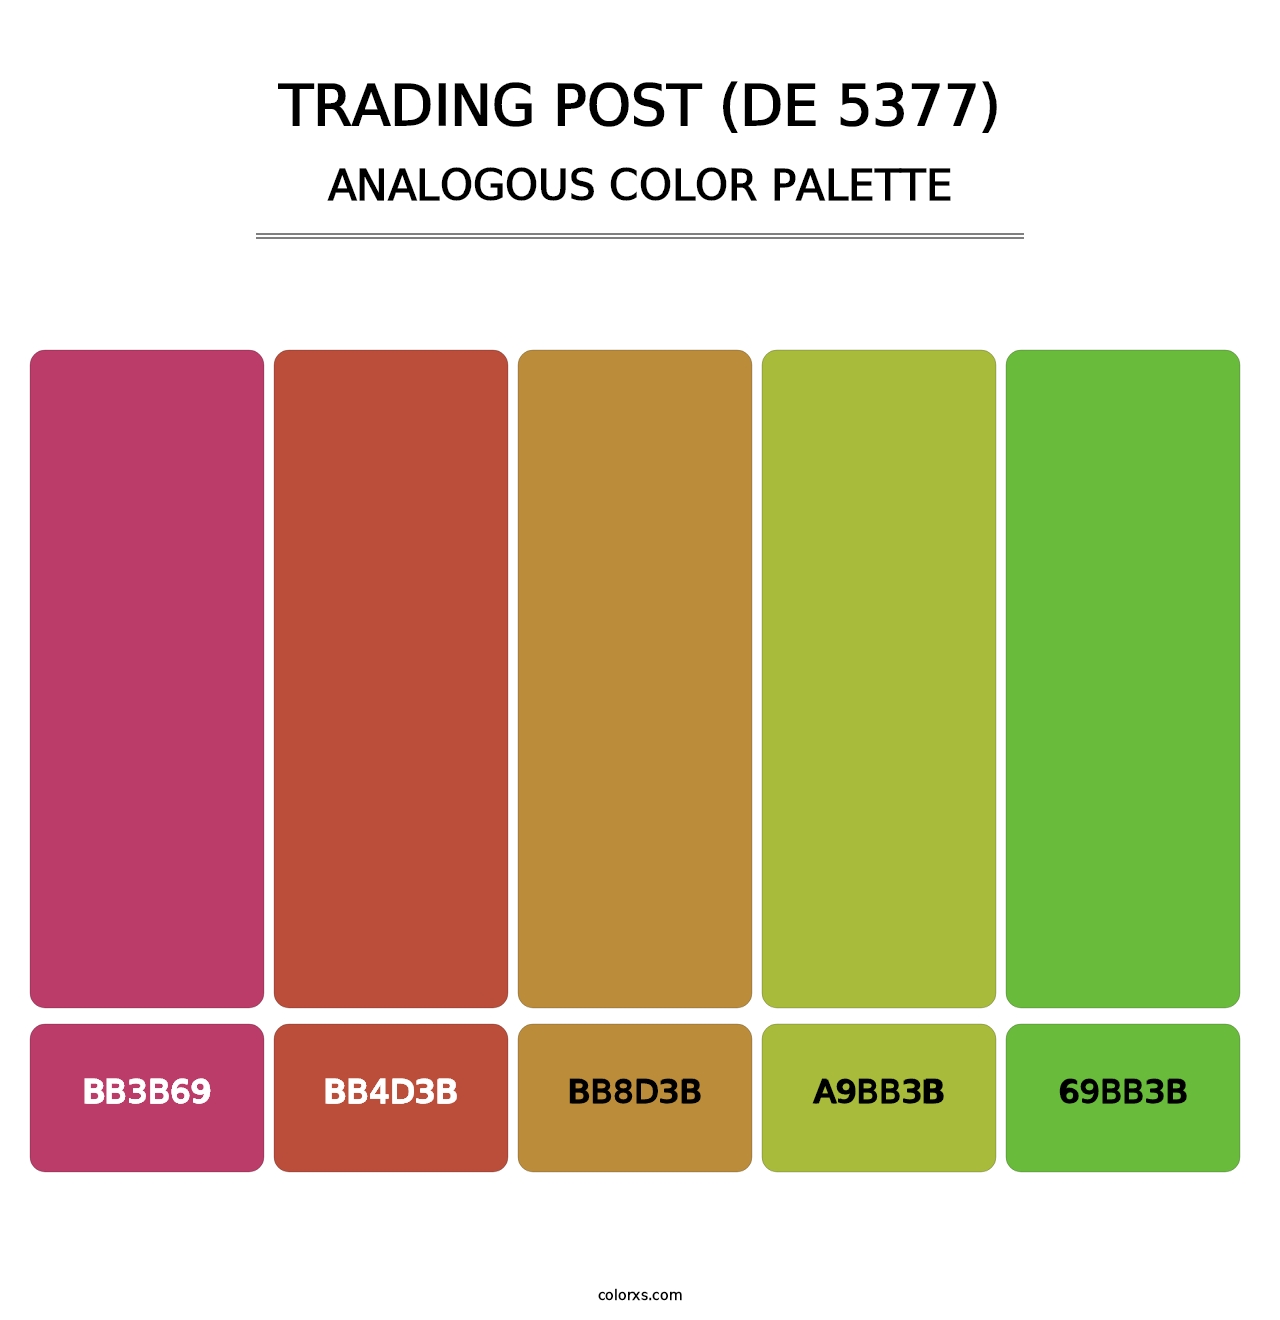 Trading Post (DE 5377) - Analogous Color Palette